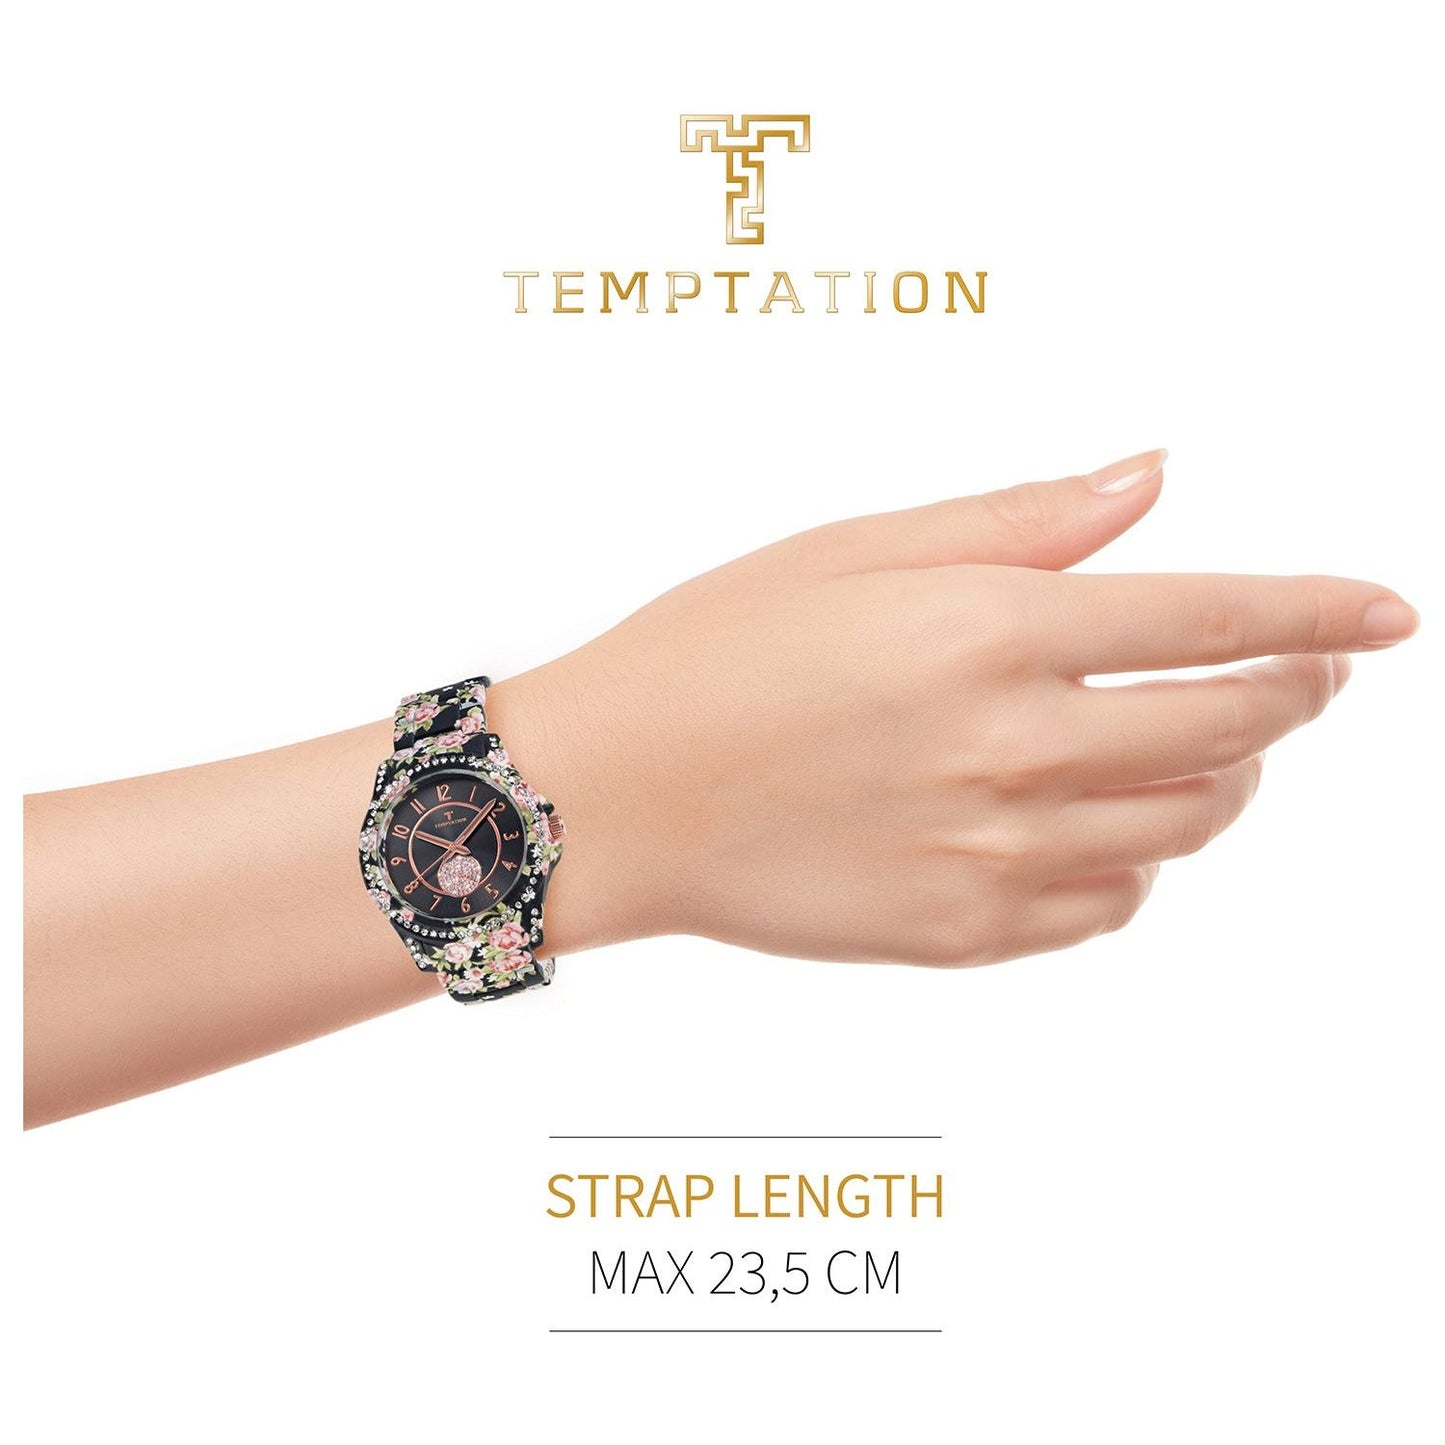 TEMPTATION TEMPTATION MOD. TEA-2015-08 WATCHES temptation-mod-tea-2015-08